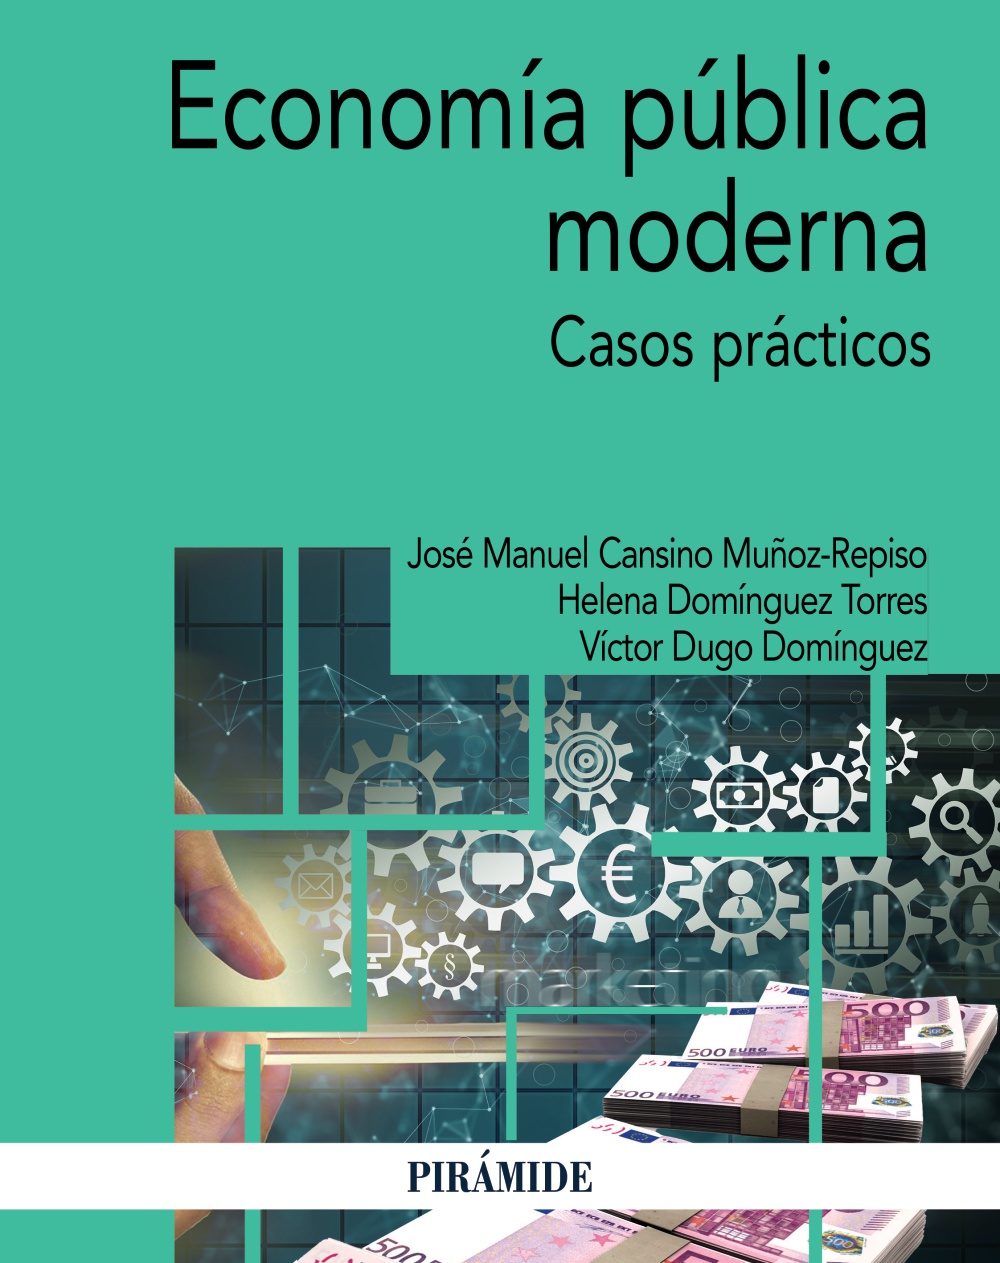 Imagen de portada del libro Economía pública moderna